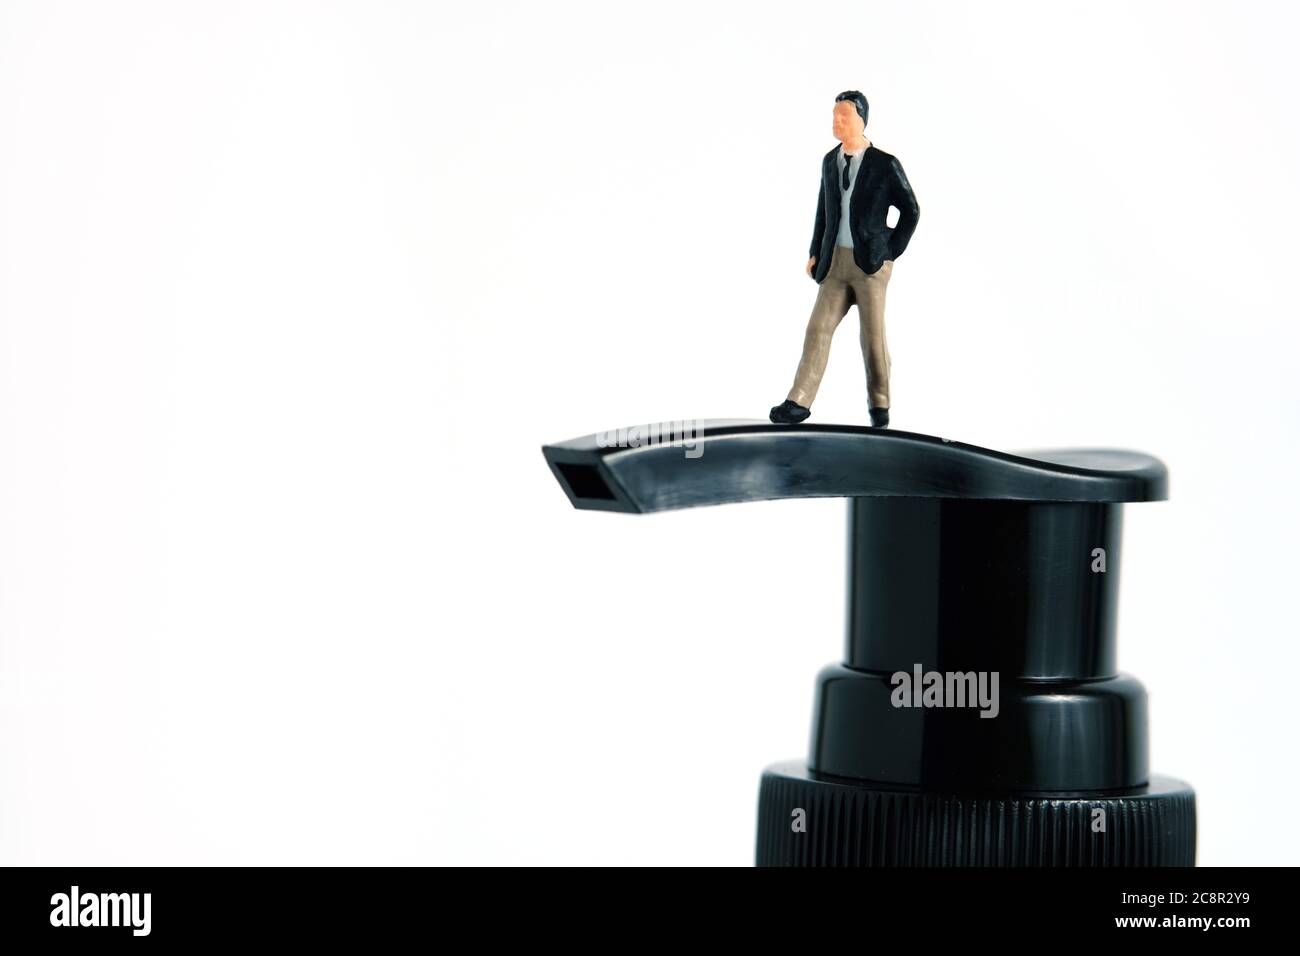 Photo miniature conceptuelle de la santé – un homme d'affaires se tient au-dessus d'une bouteille de désinfectant pour les mains. Image Banque D'Images